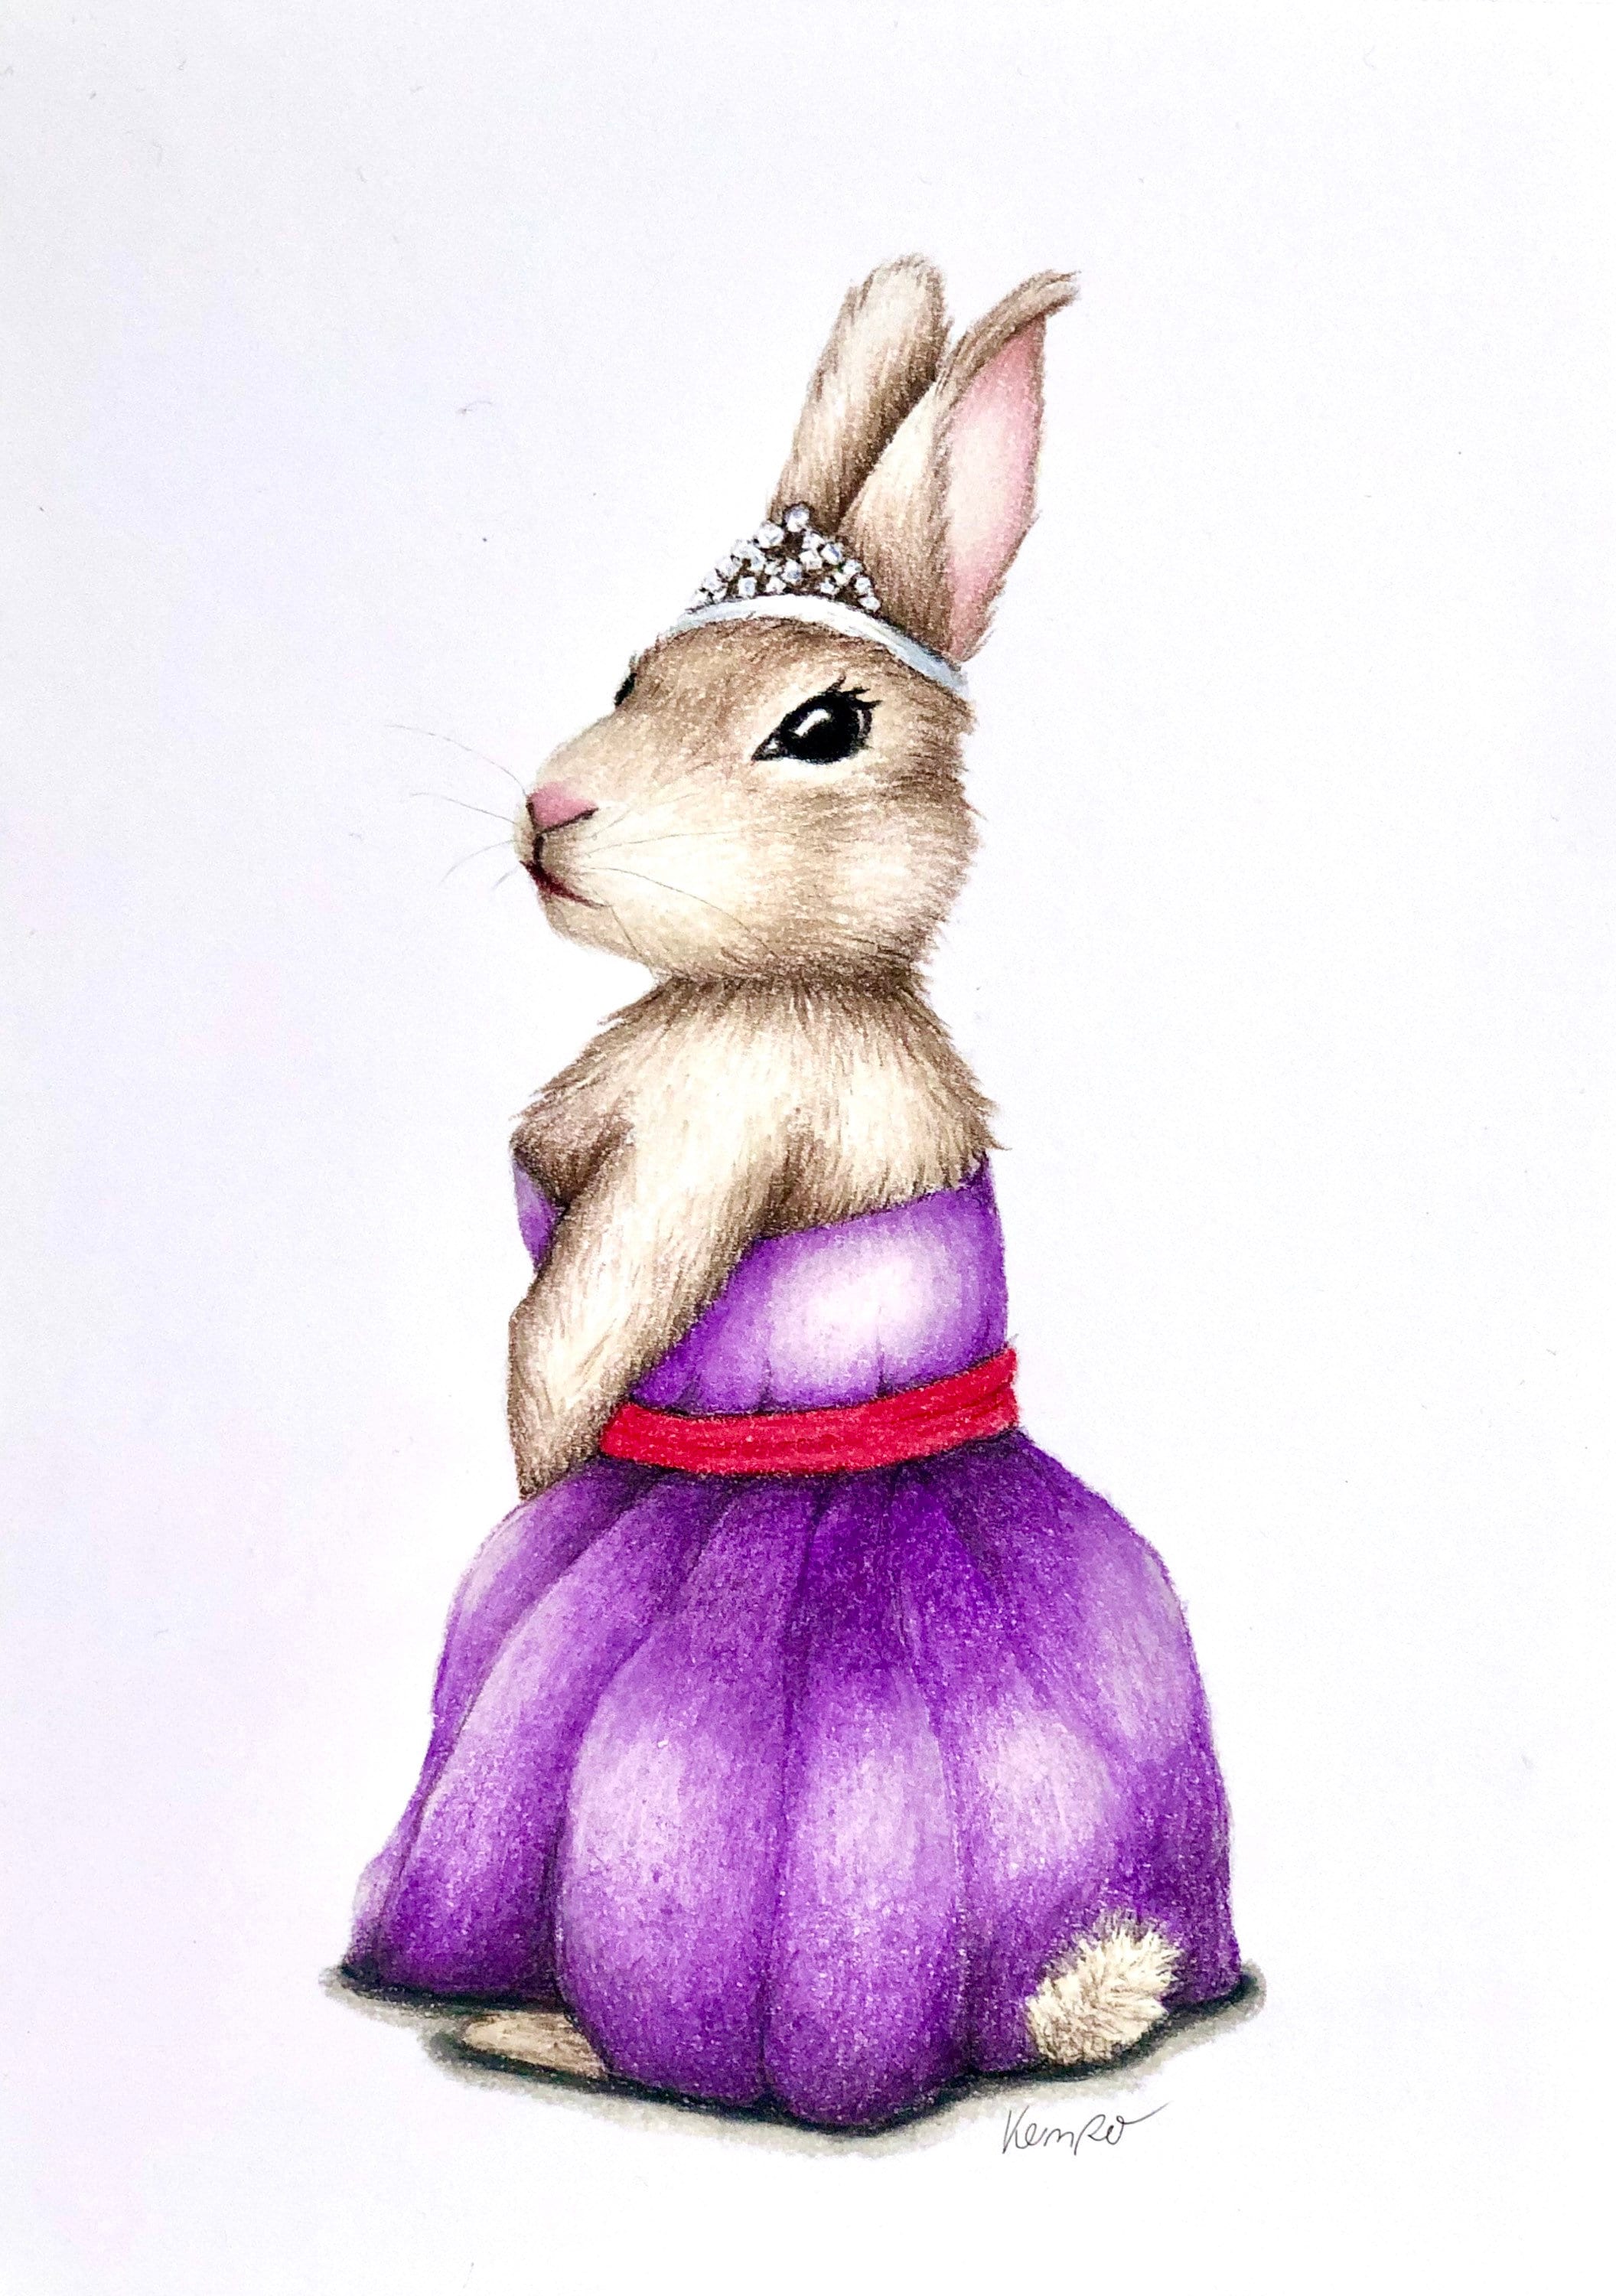 Rabbit Etsy - queen Picture